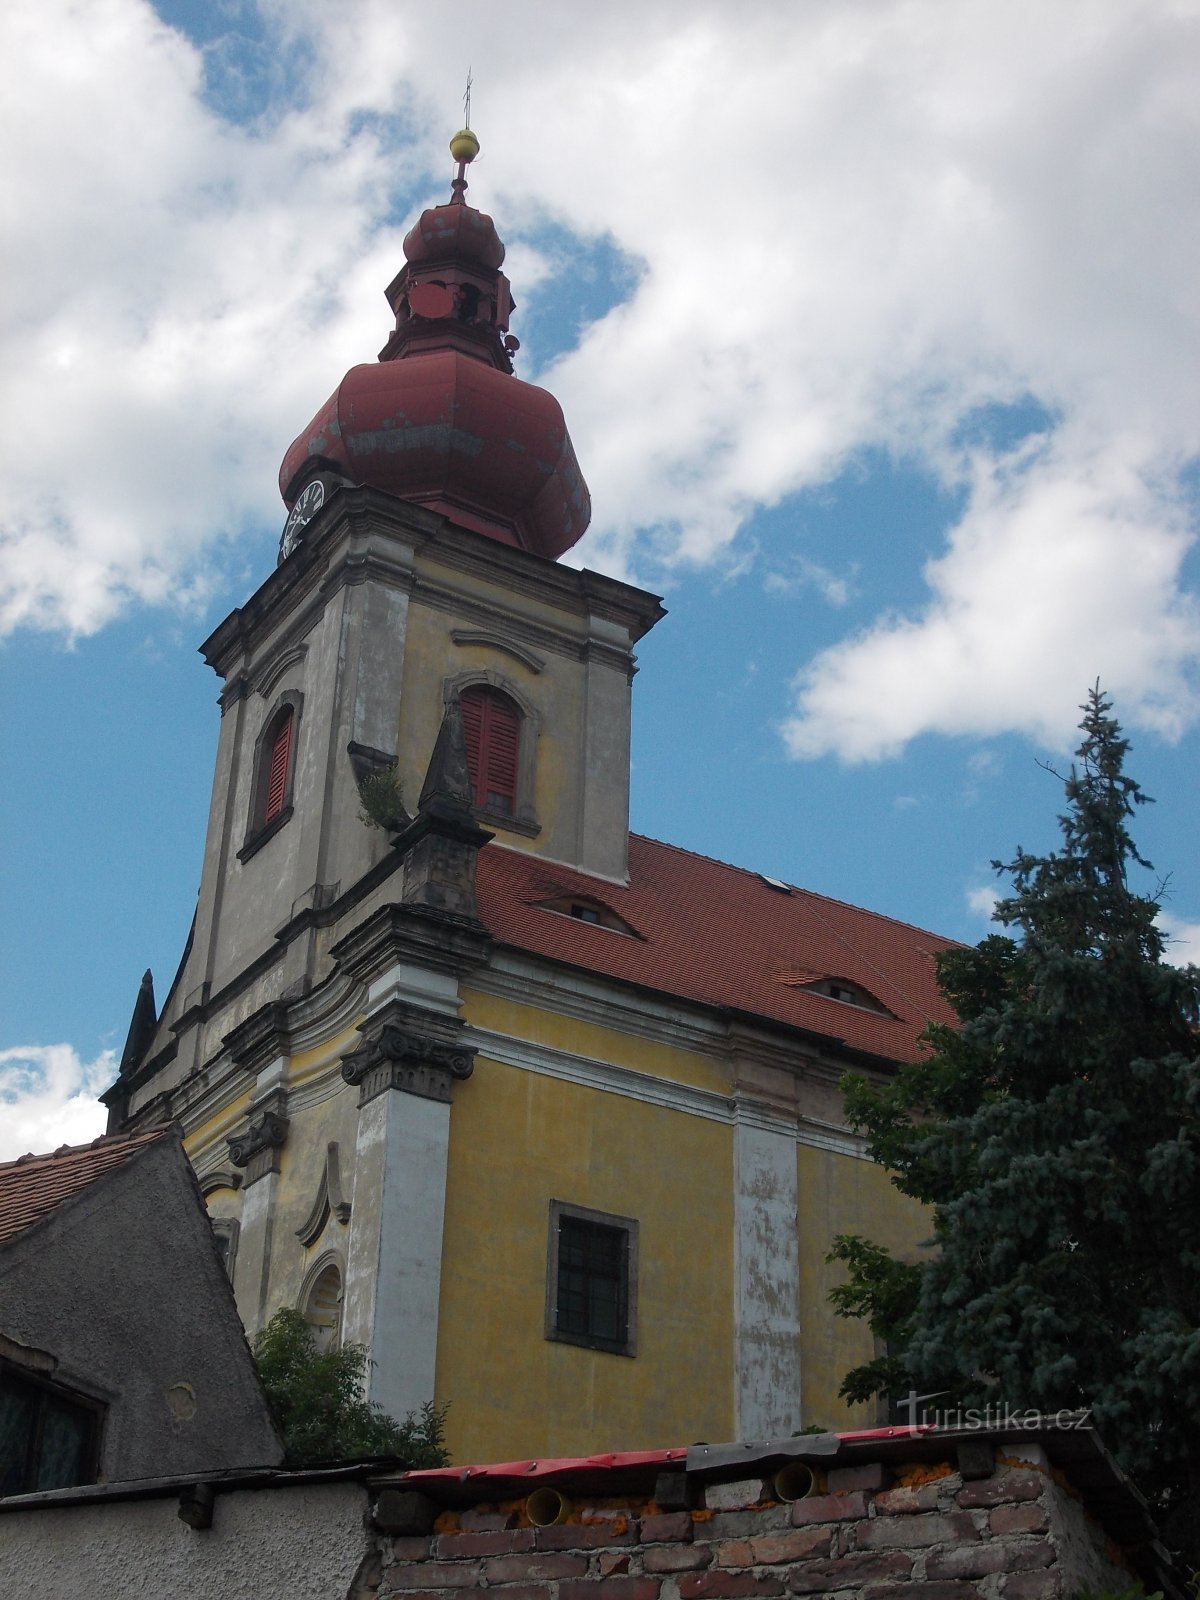 una iglesia con una torre prismática incorporada, rematada con una torre en forma de cebolla